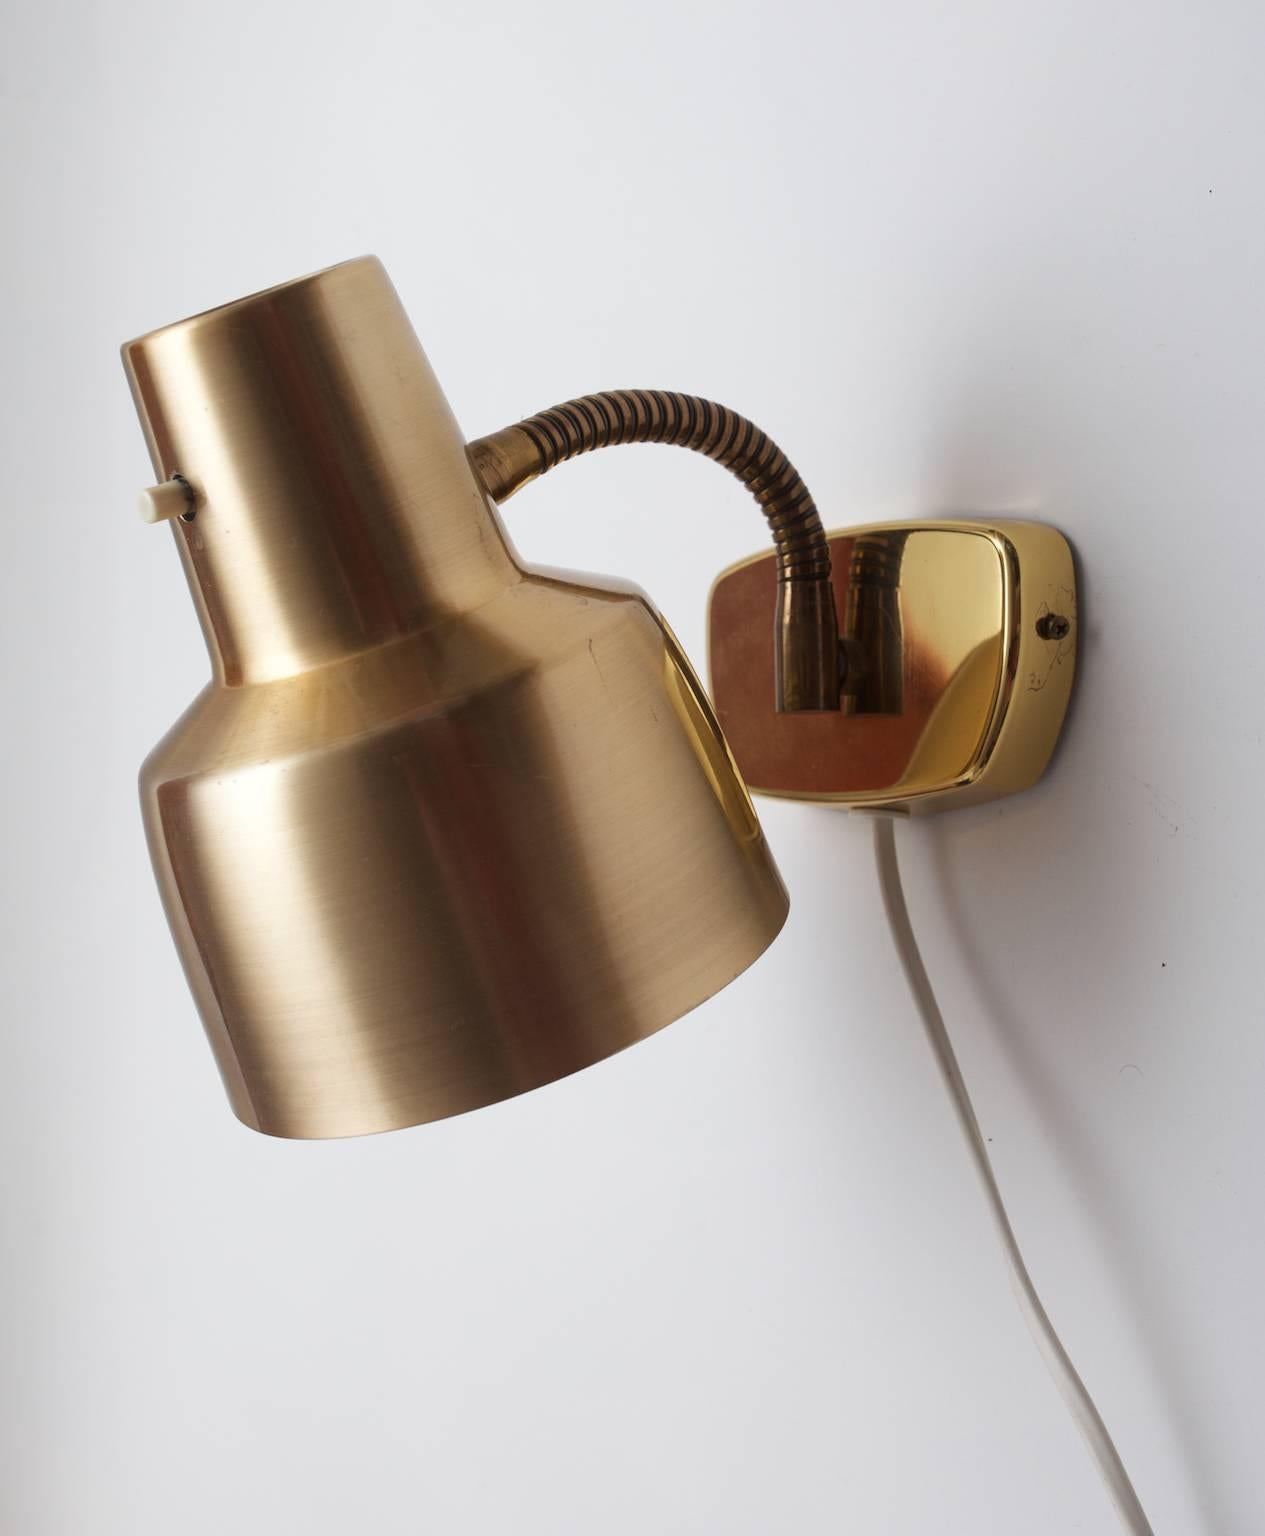 Scandinavian Modern Wall Lamp in Brass and Anodized Aluminium, Sweden 1960s from Armaturhantverk For Sale